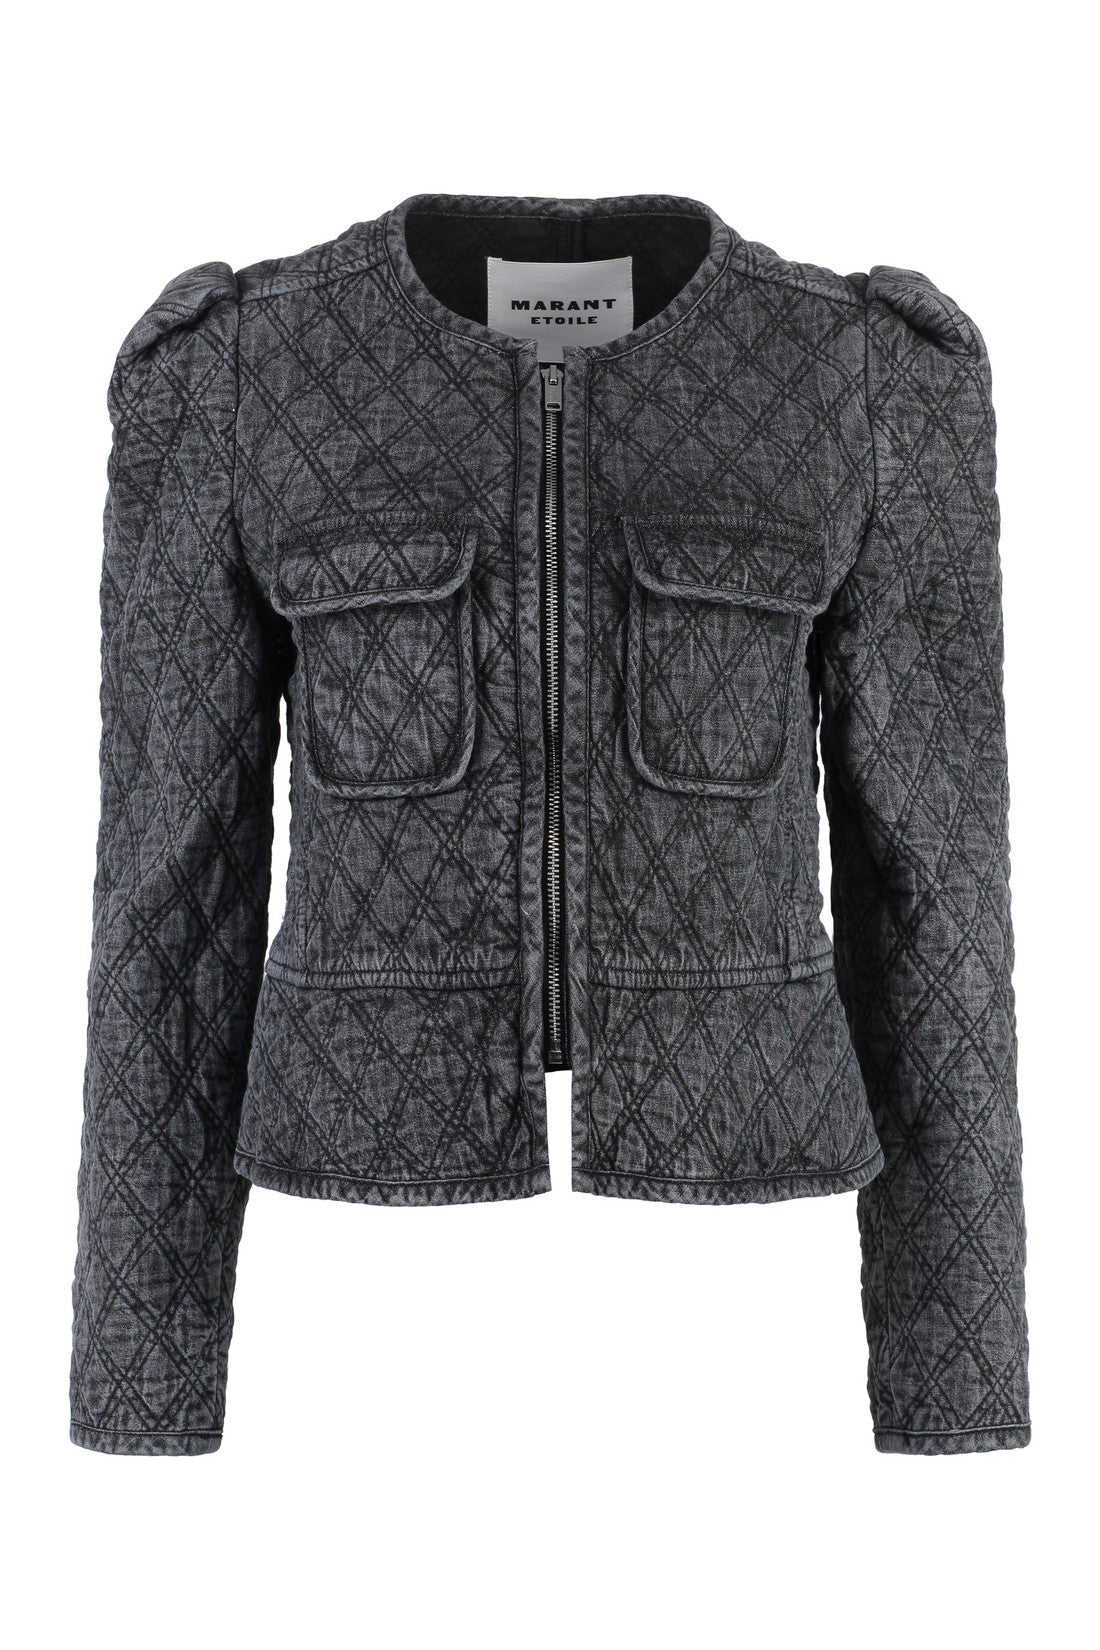 Isabel Marant Étoile-OUTLET-SALE-Deliona zippered cotton jacket-ARCHIVIST